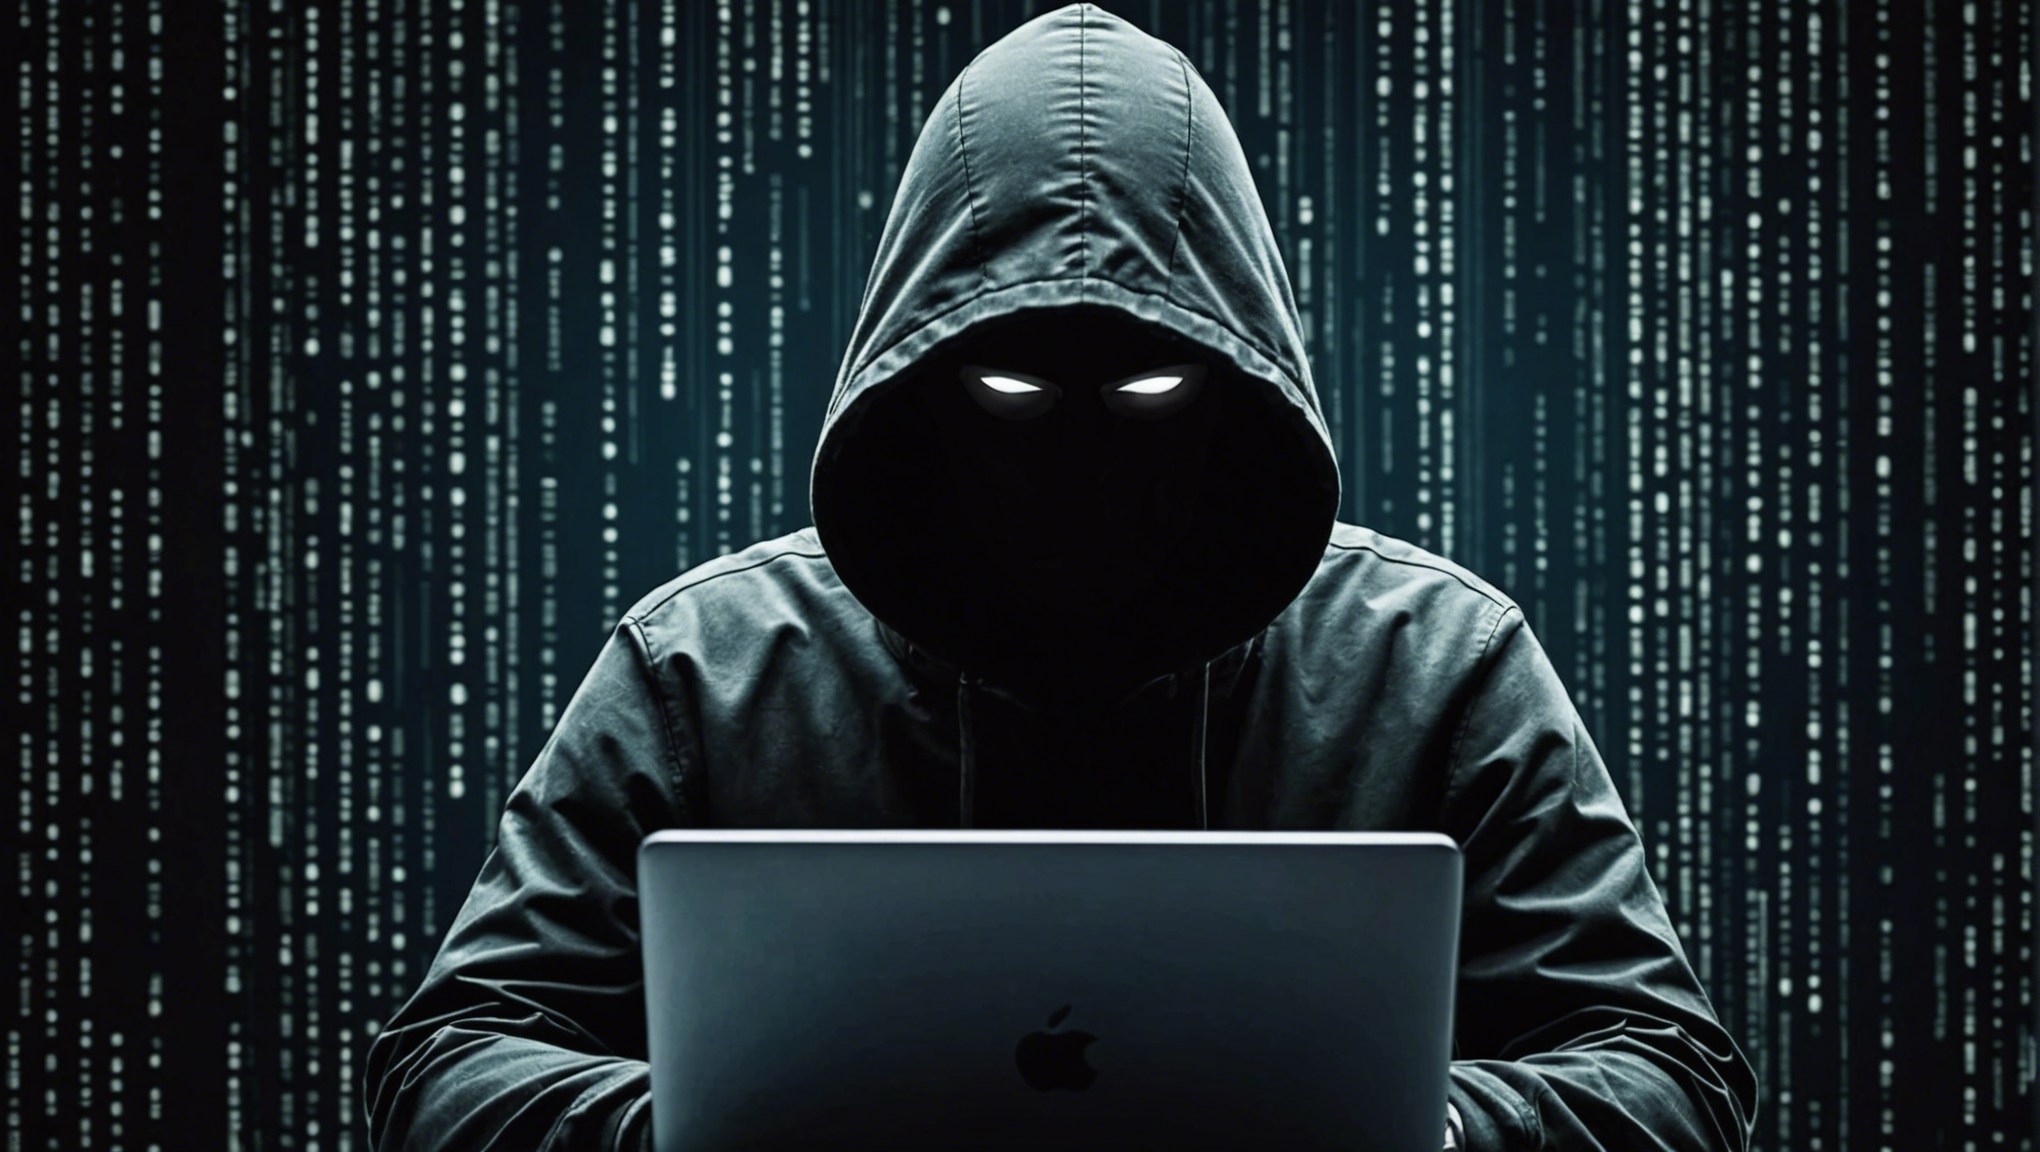 découvrez qui sont réellement les hackers, leur rôle et leurs actions à travers cet article fascinant.